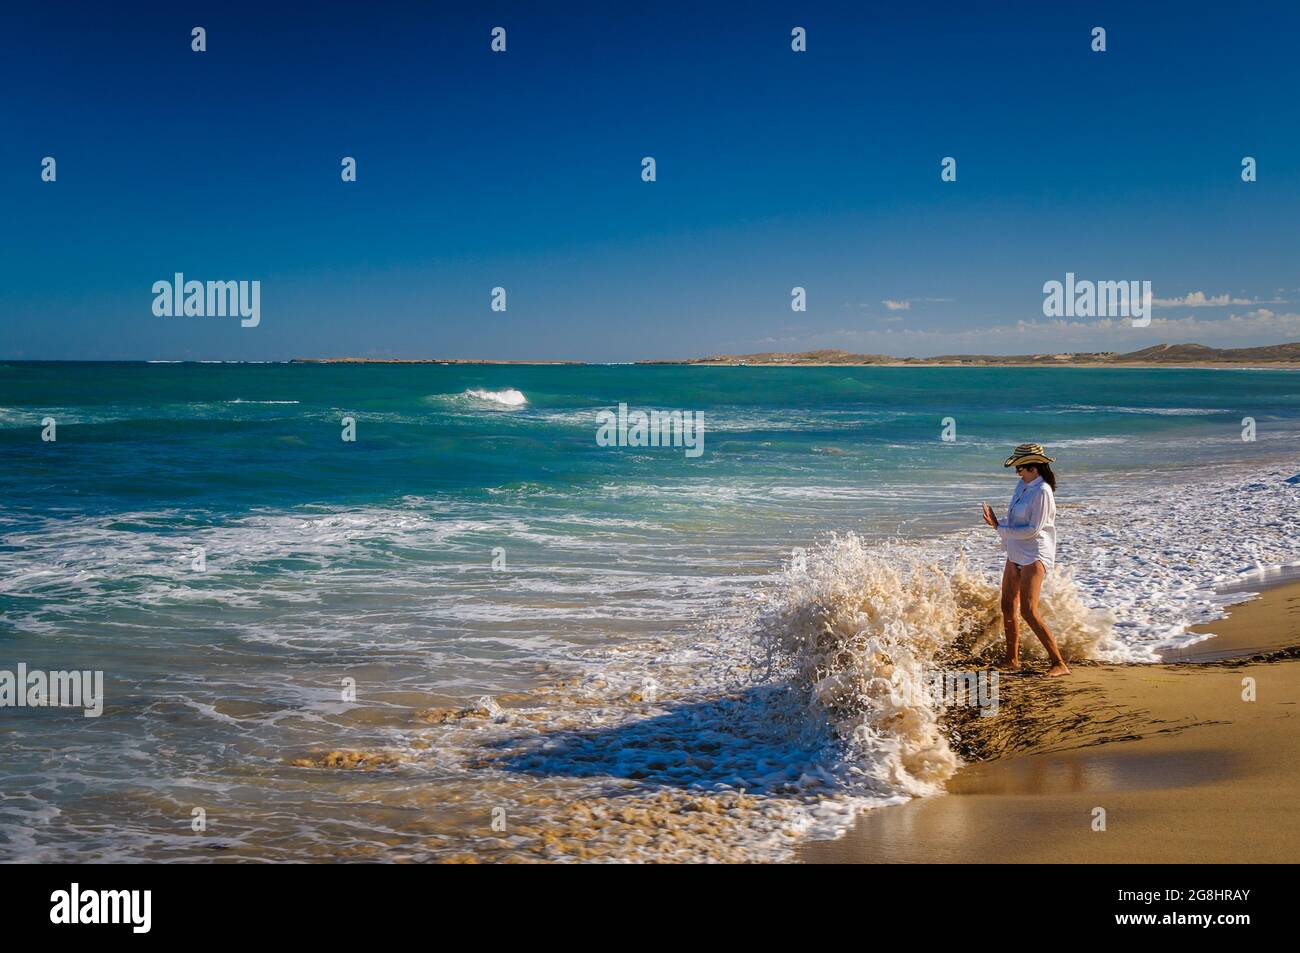 Una mujer beachcomber está en un punto arenoso sorprendido por una ola que rompe en la estación de Quobba en la región de Gascoyne de Australia Occidental. Foto de stock